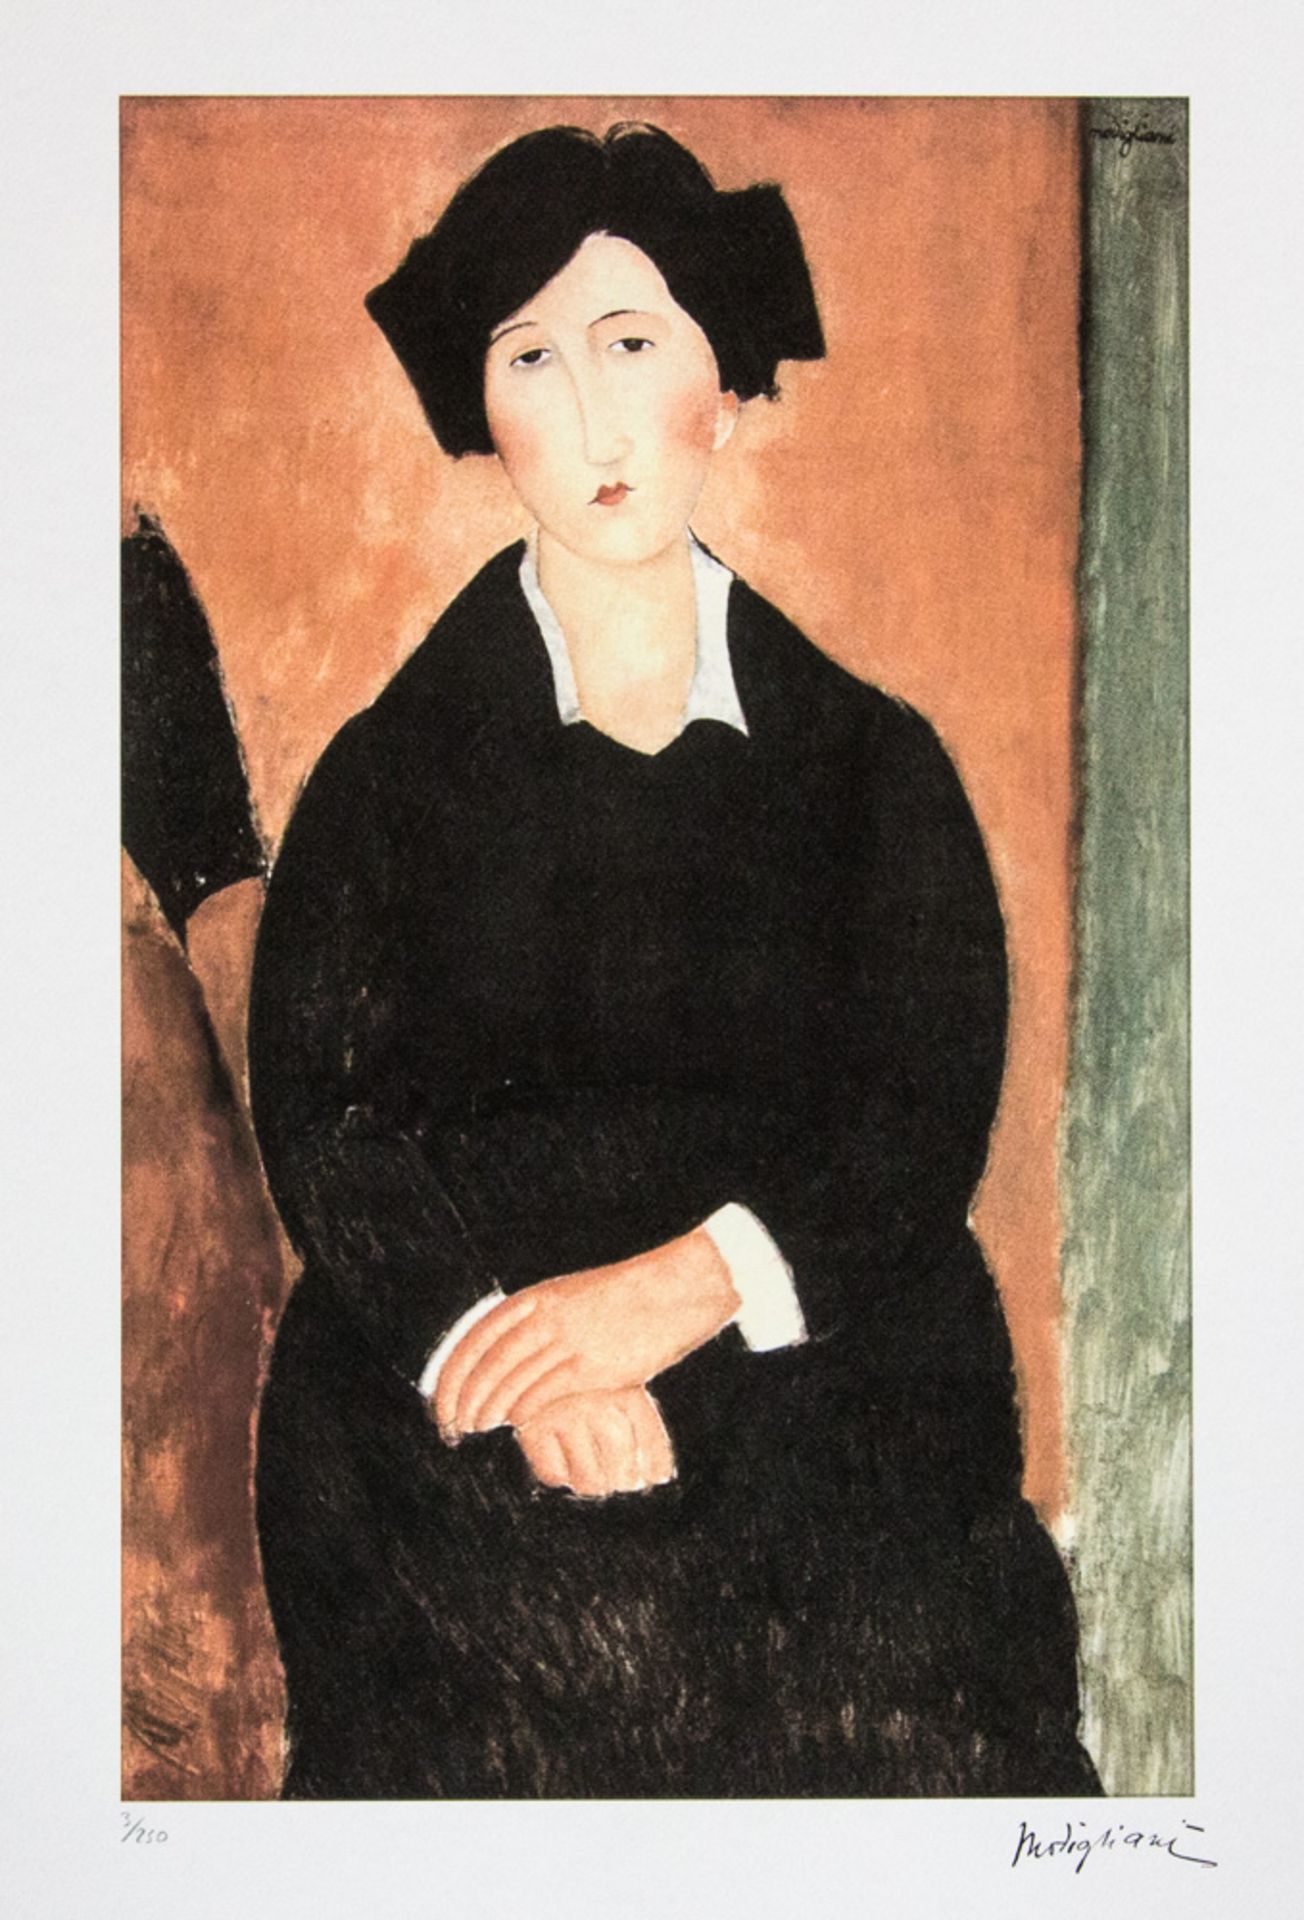 Amadeo Modigliani 'The Italian Woman'